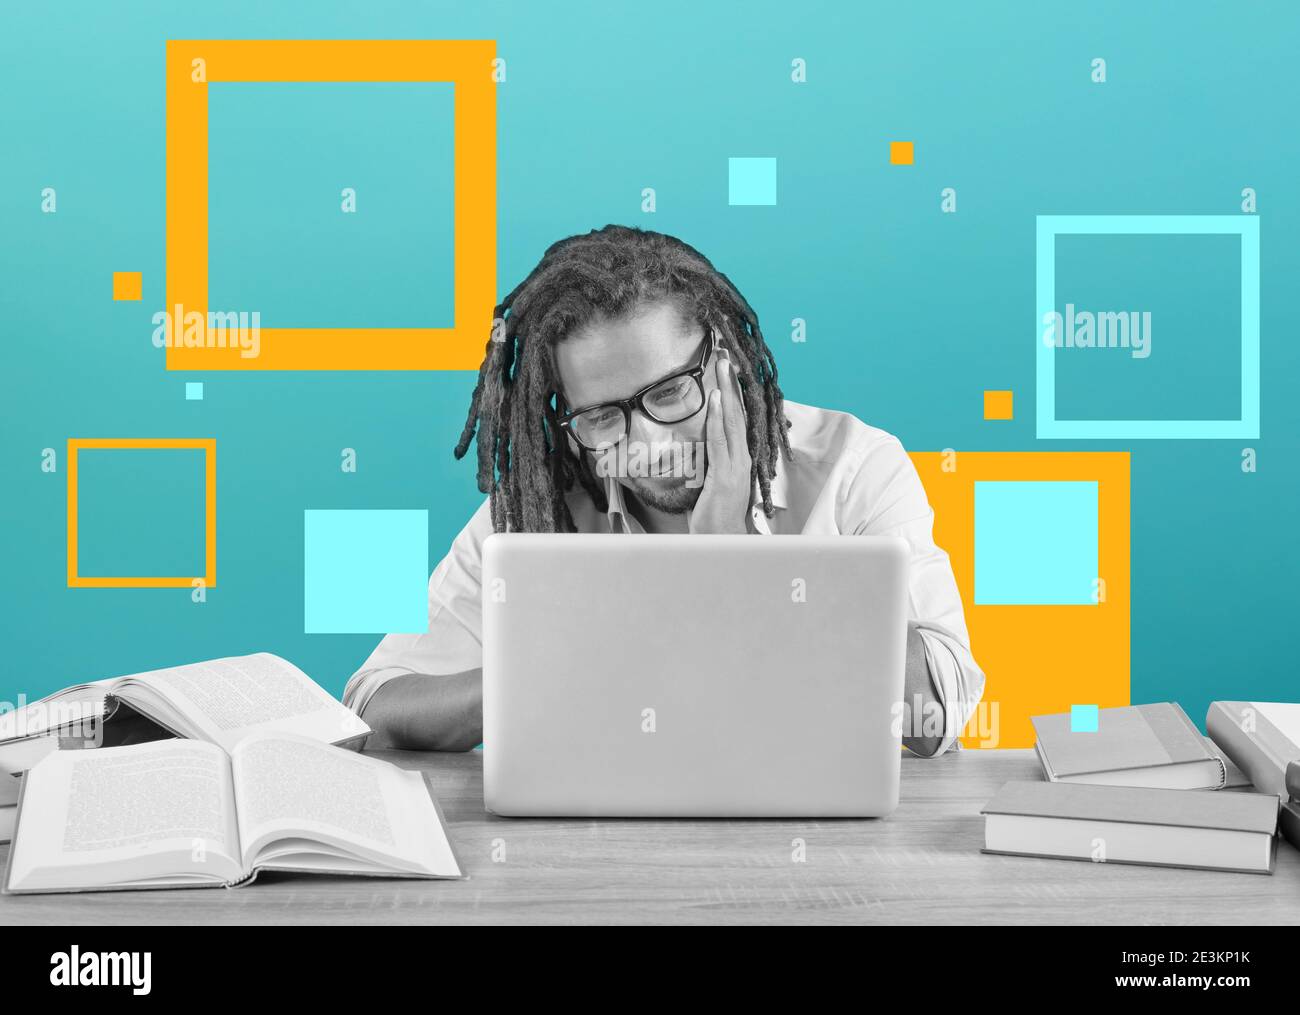 L'étudiant étudie avec son ordinateur portable avec un bureau plein de livres. Concept sur examen en ligne Banque D'Images